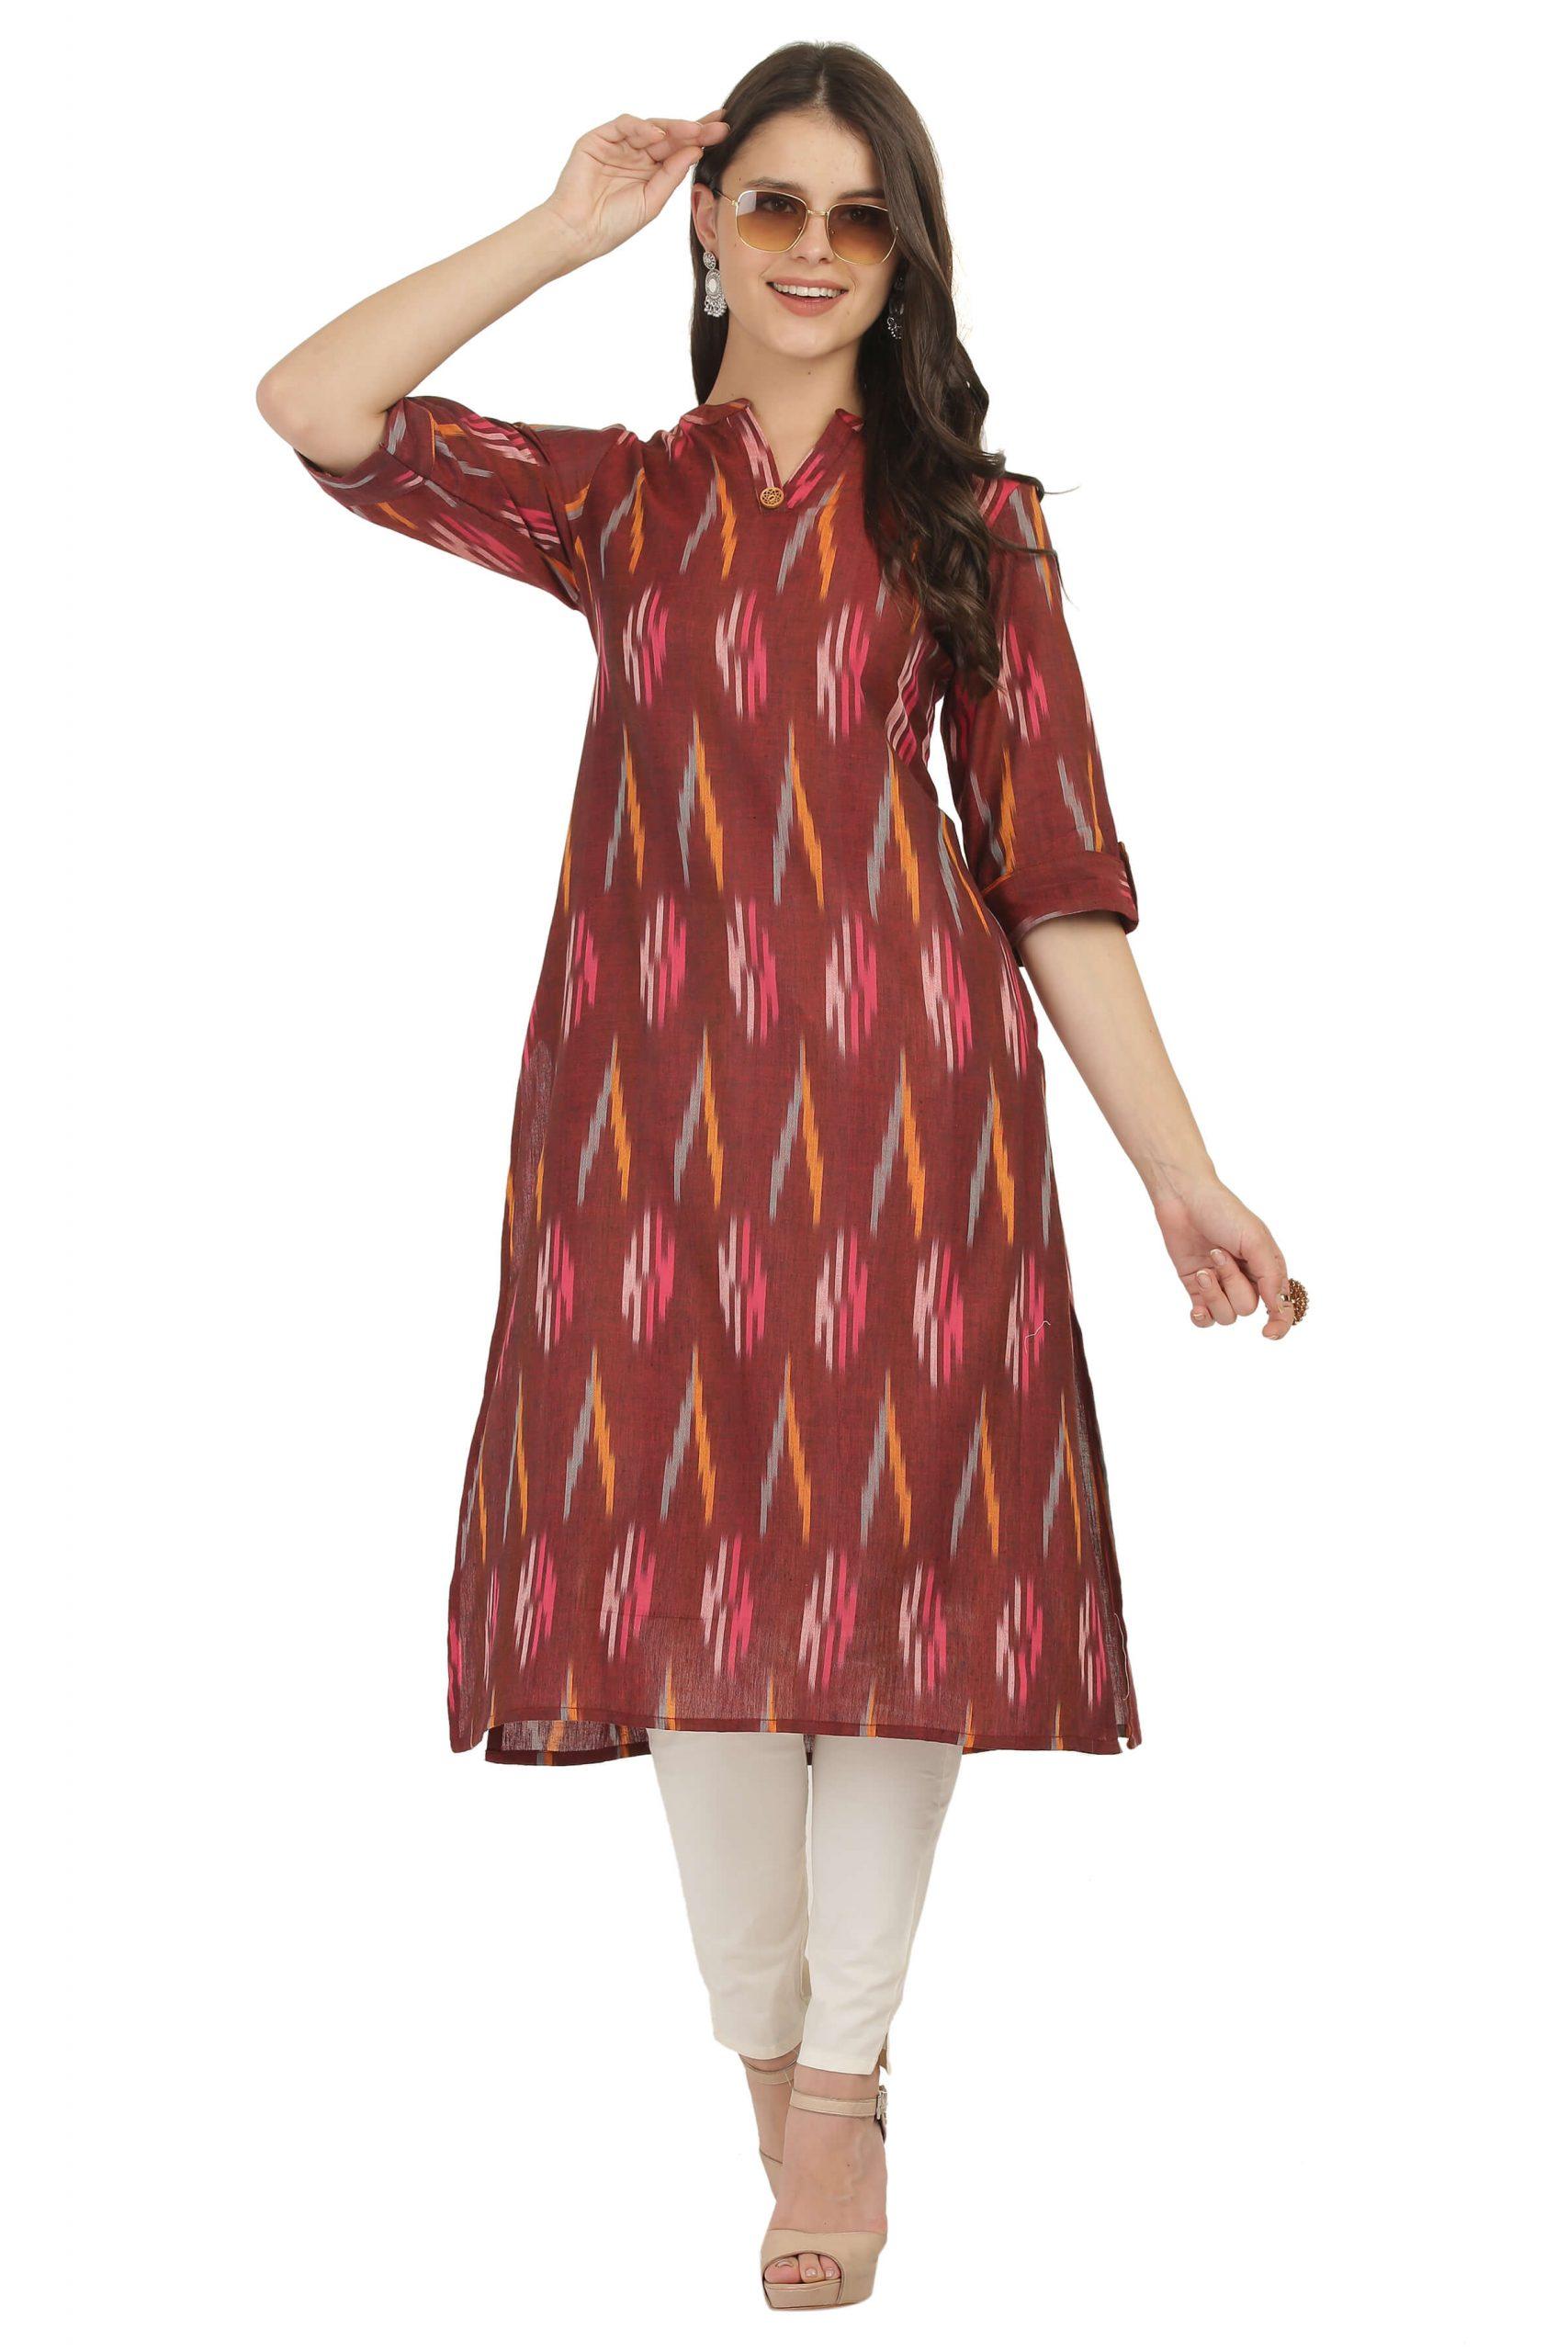 Raas- Ikkat Women’s Kurta | 100% Cotton Kurti | Handloom | Red Maroon Multicolour